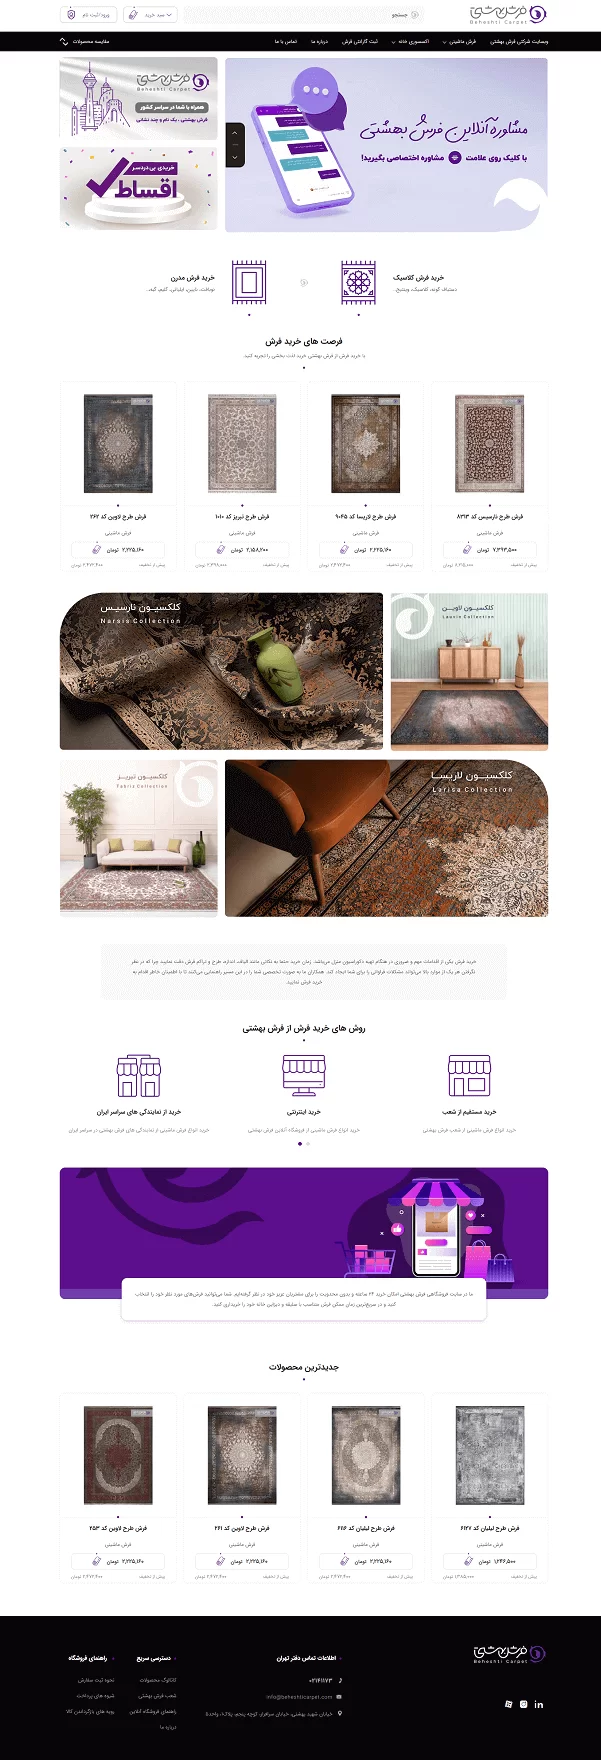 طراحی سایت فرش بهشتی